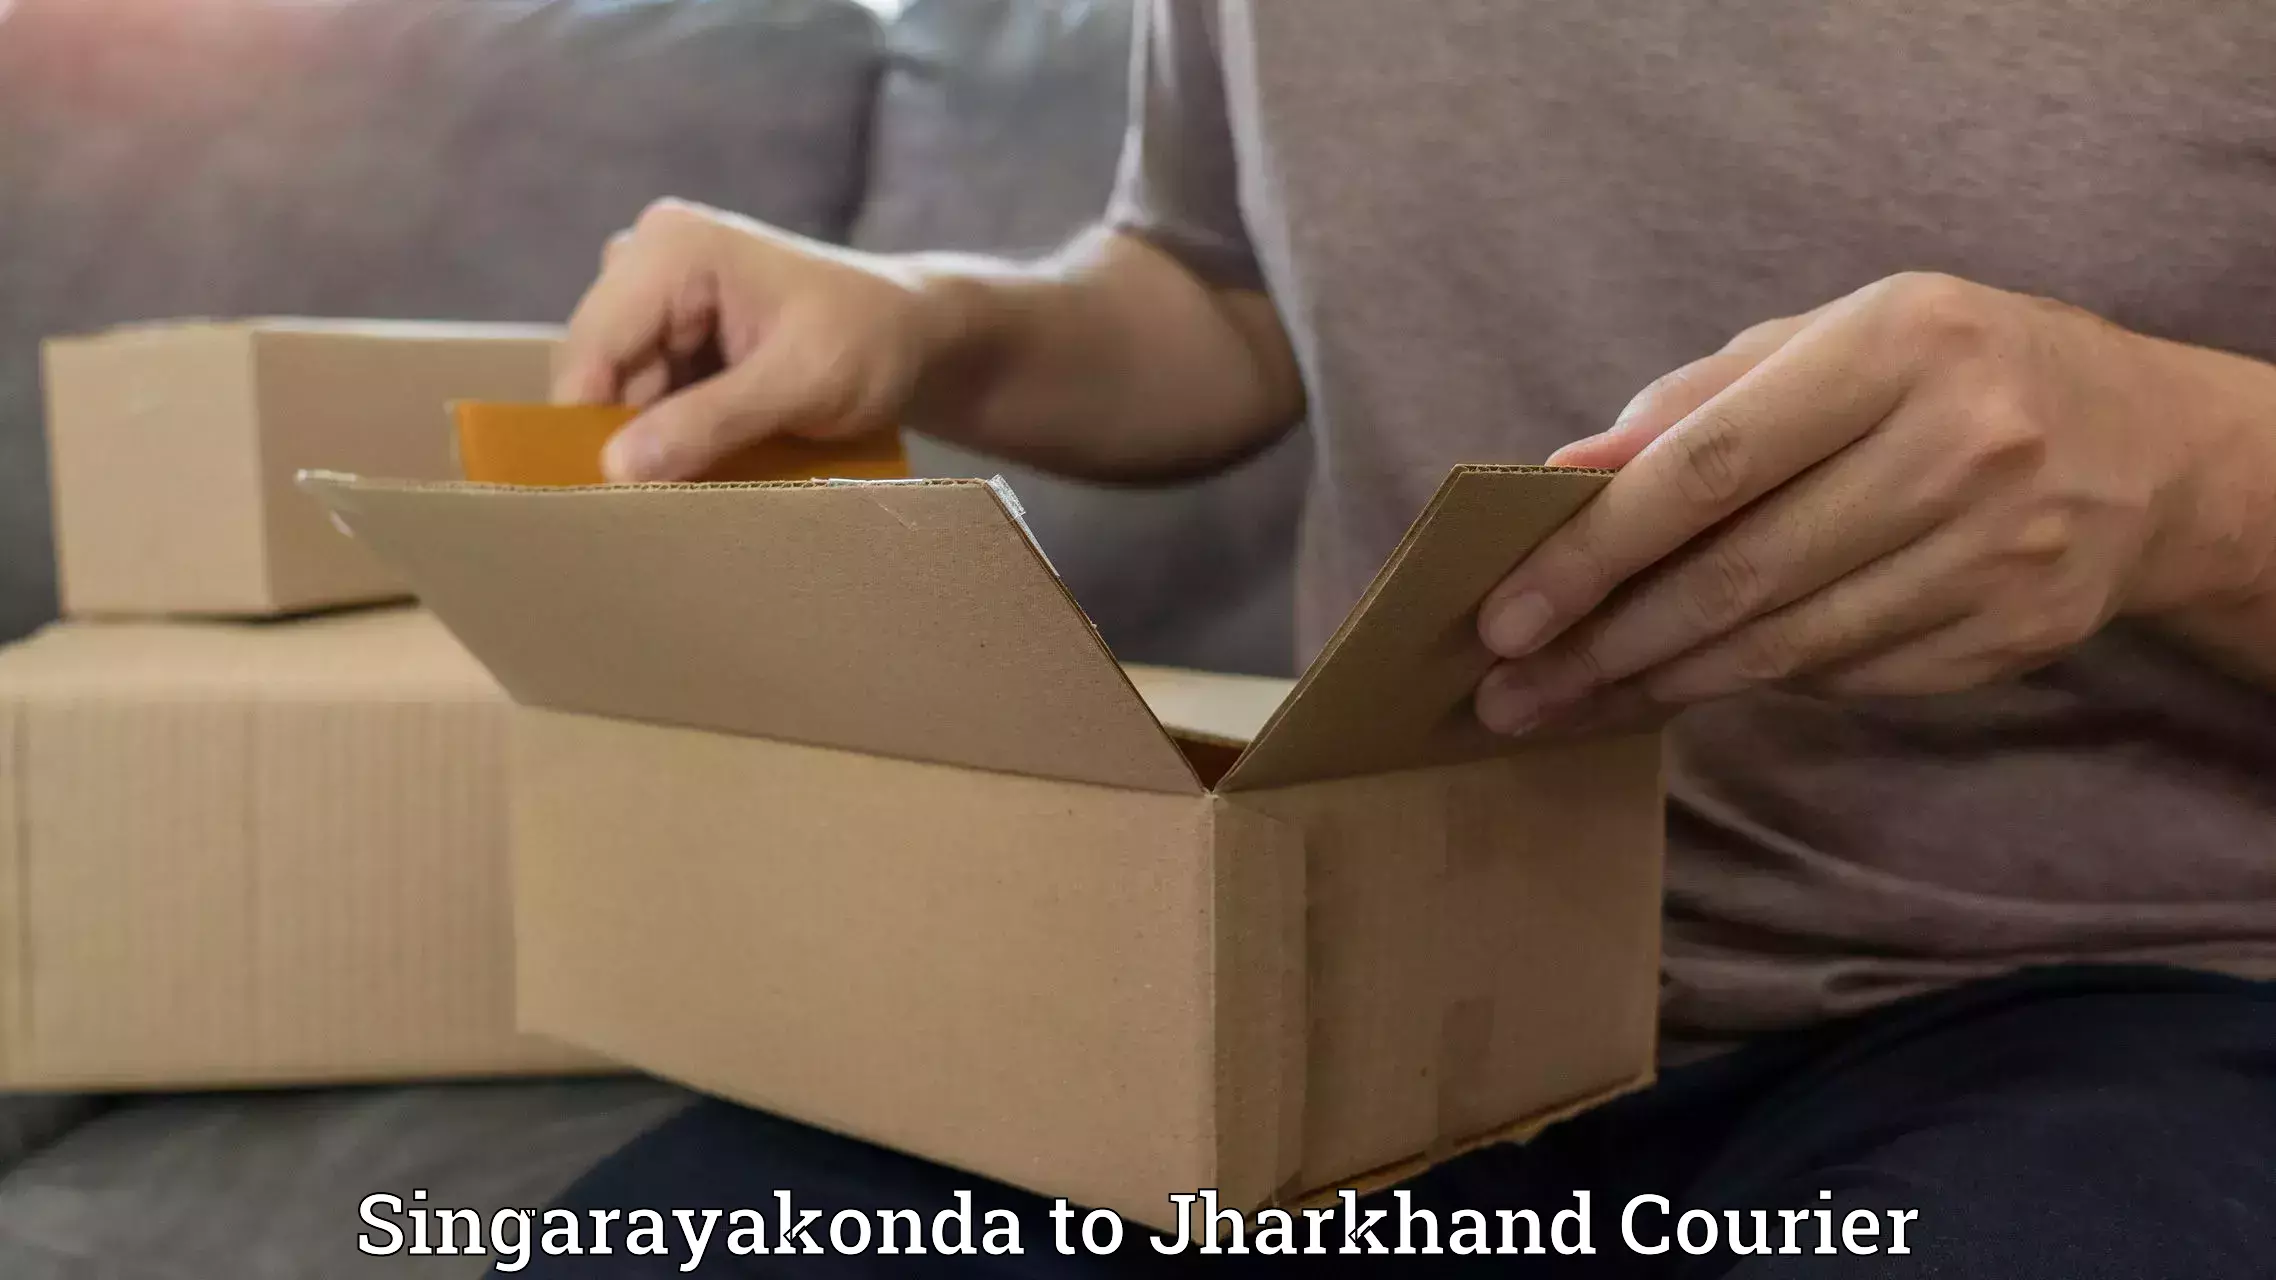 Online package tracking Singarayakonda to Jharkhand